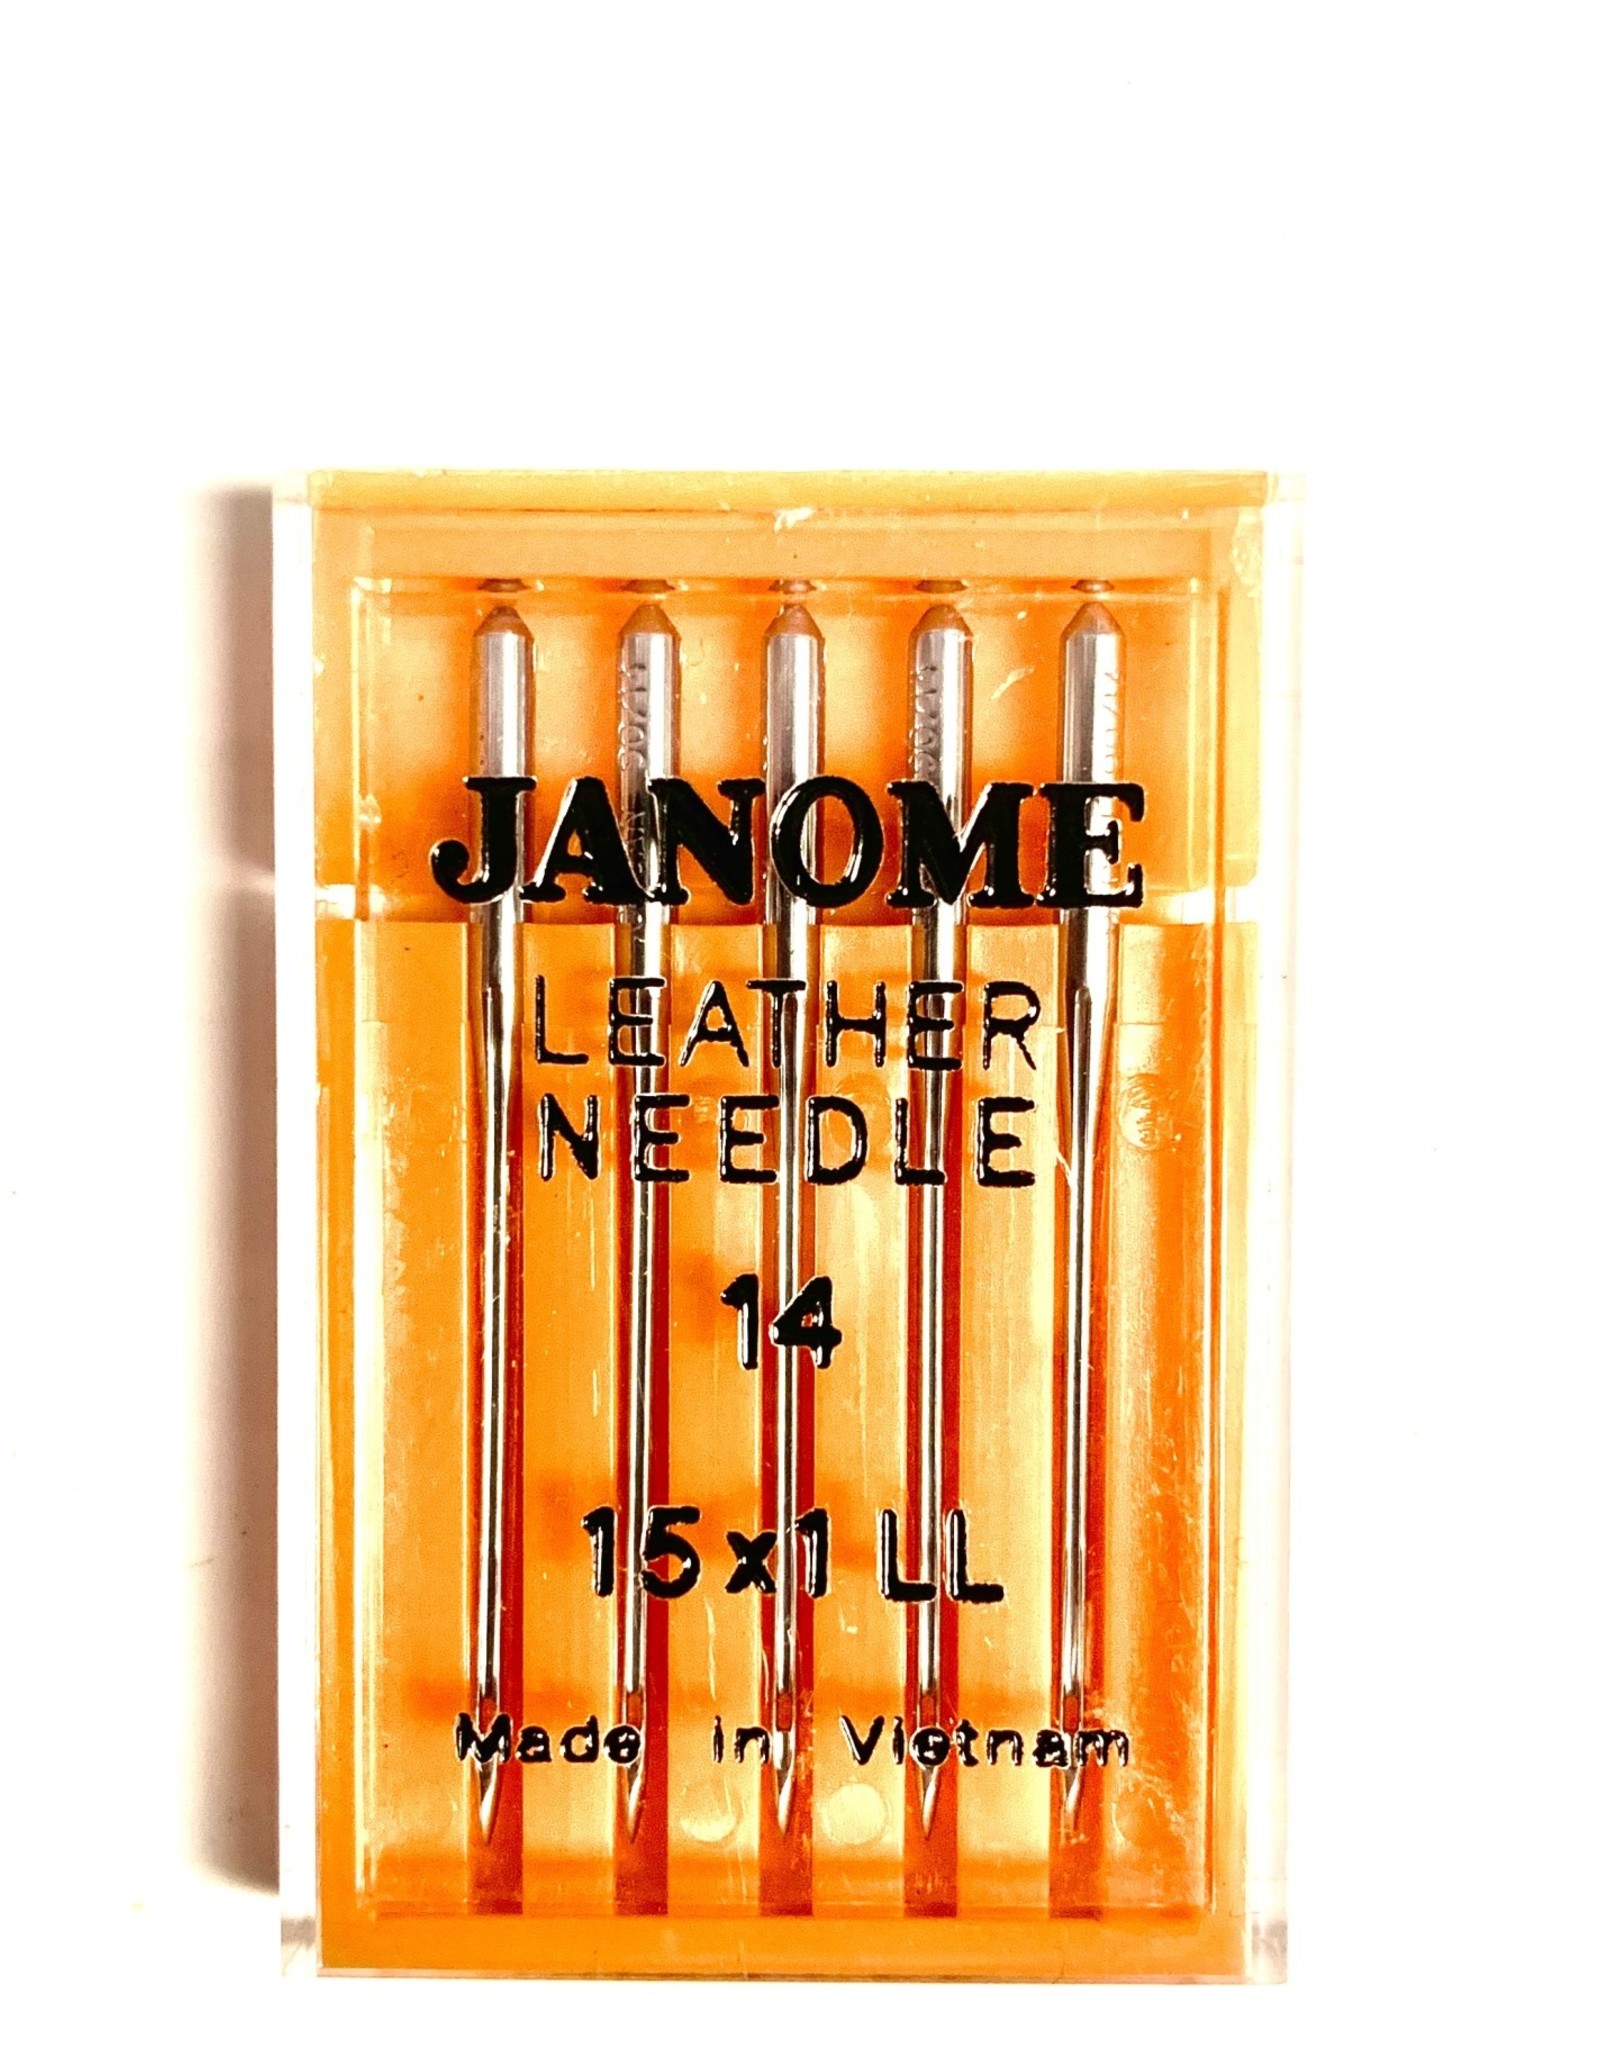 Janome Leather Needle 14